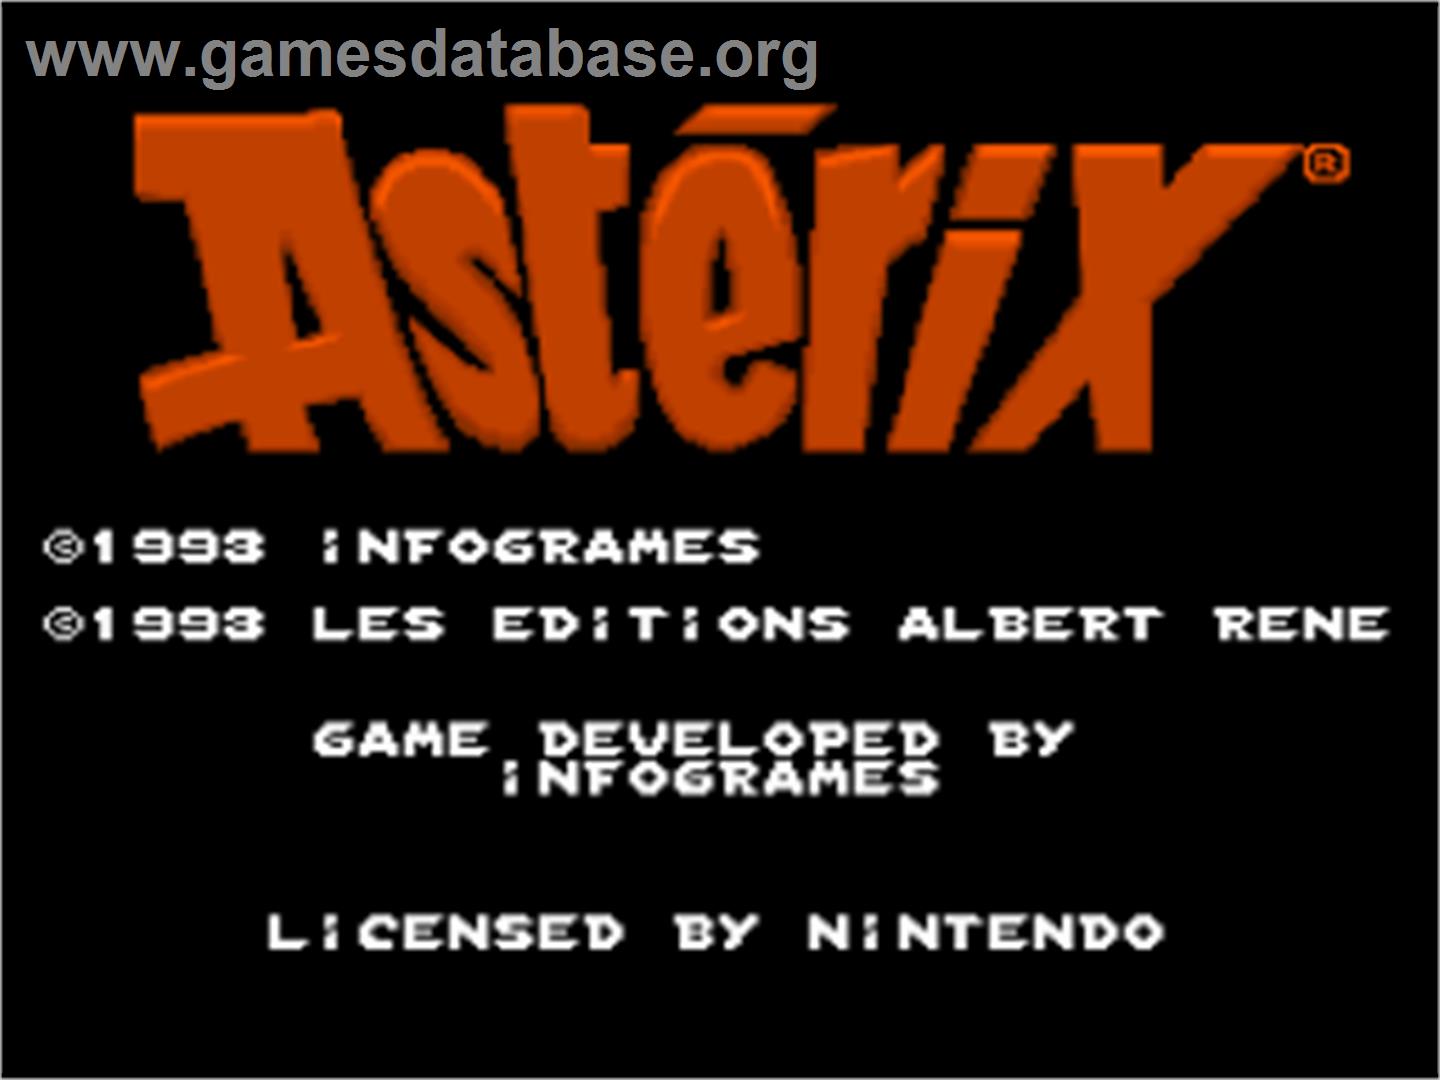 Astérix - Nintendo SNES - Artwork - Title Screen